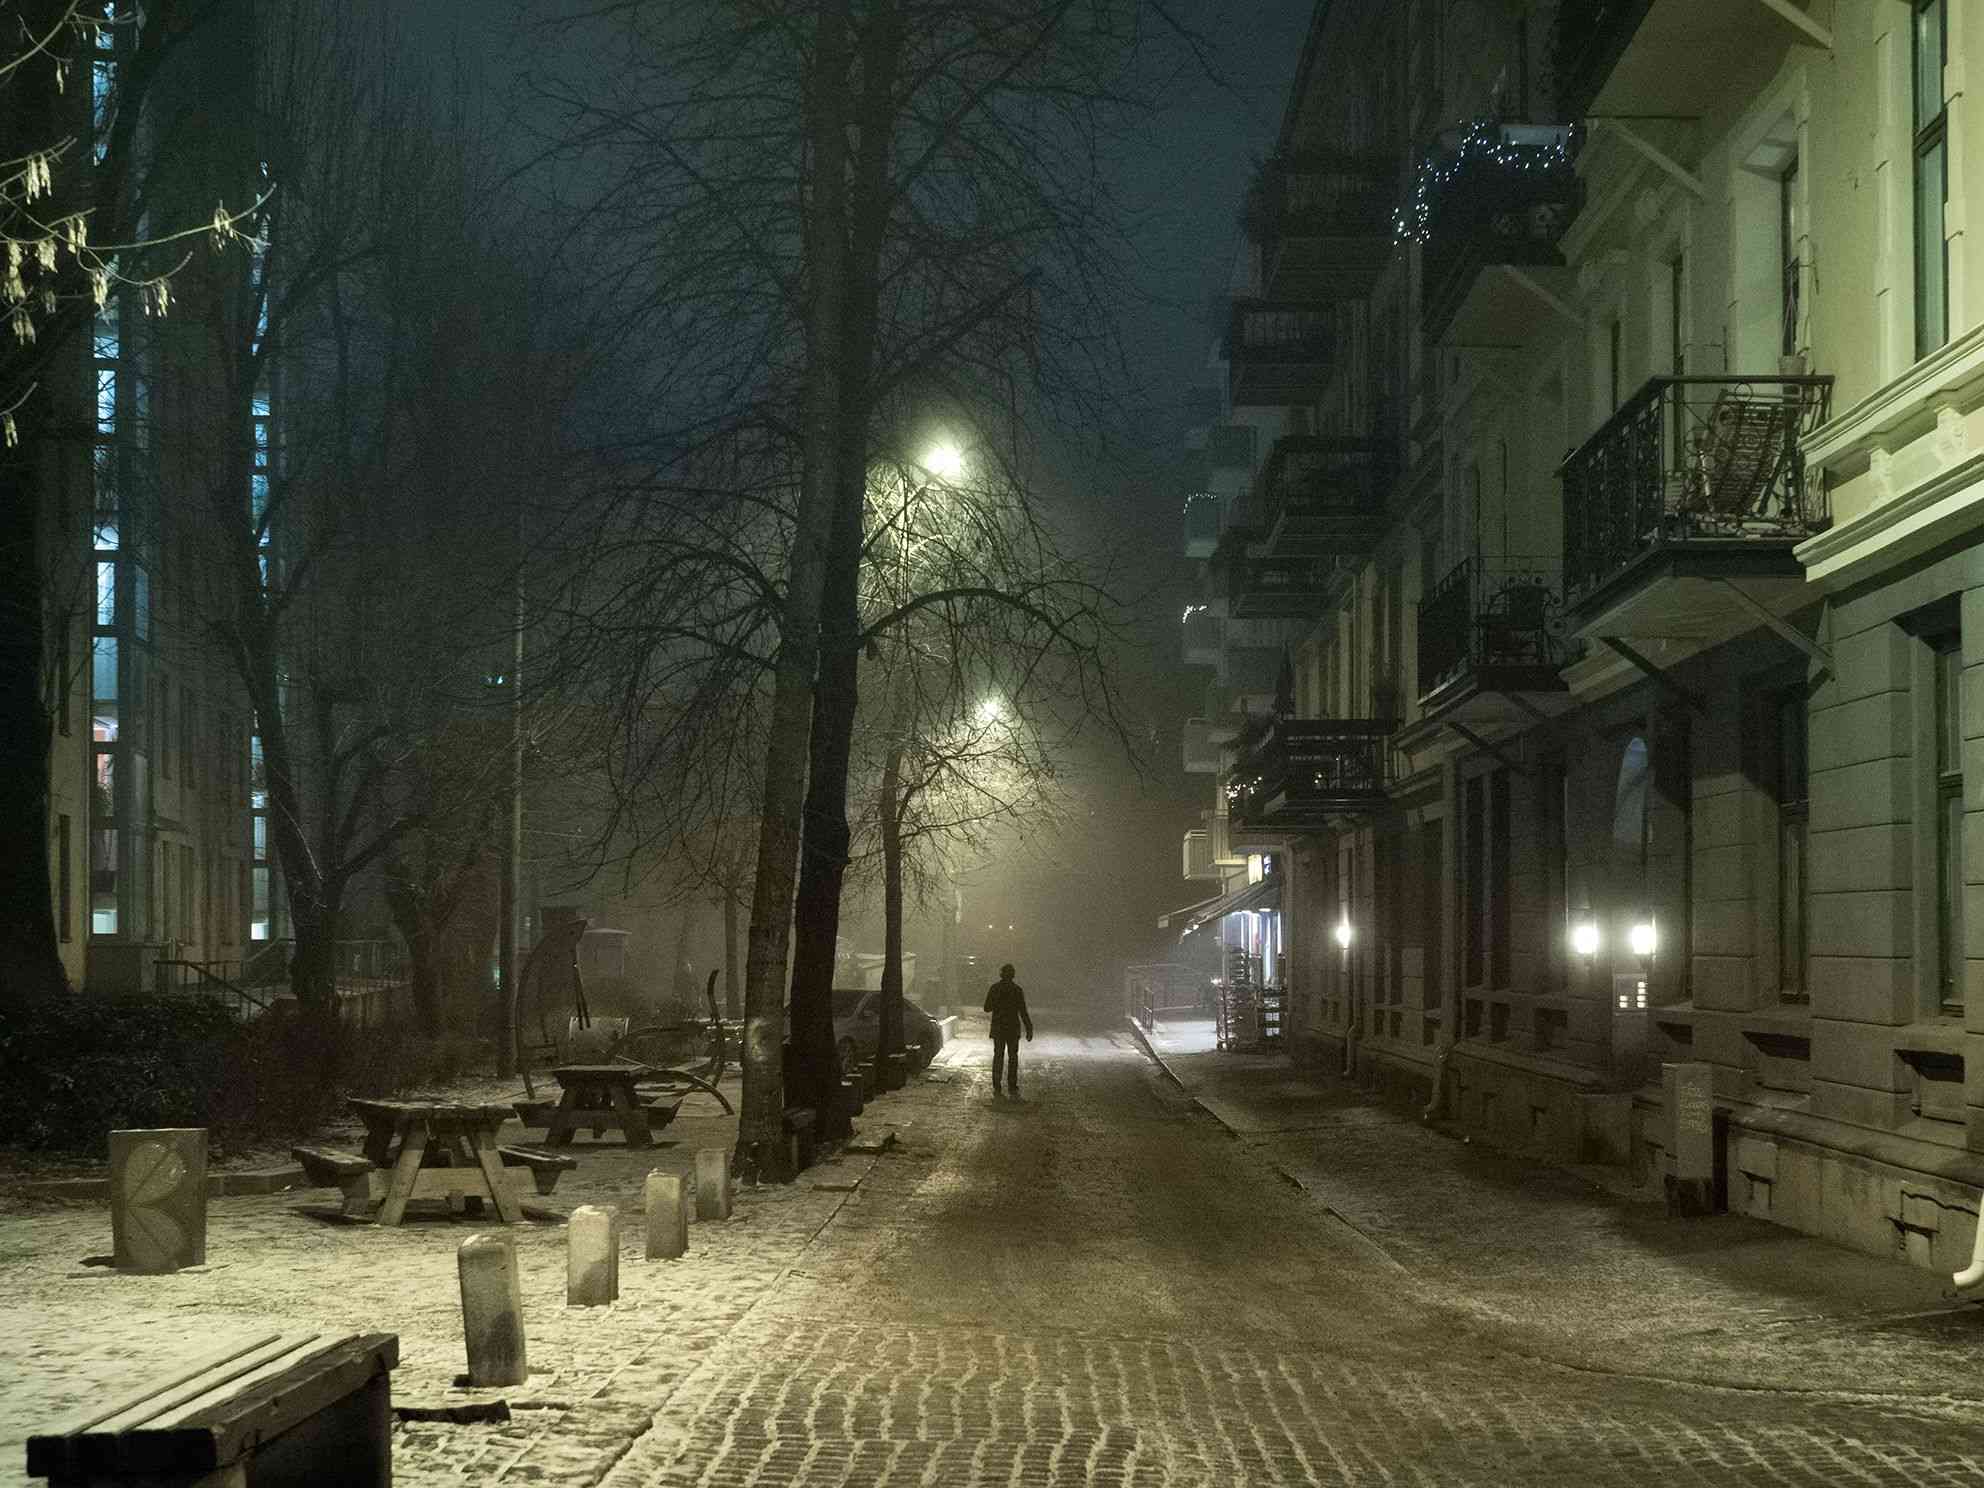 凛冬将至的黑暗 记录挪威冬至日的漫长夜晚